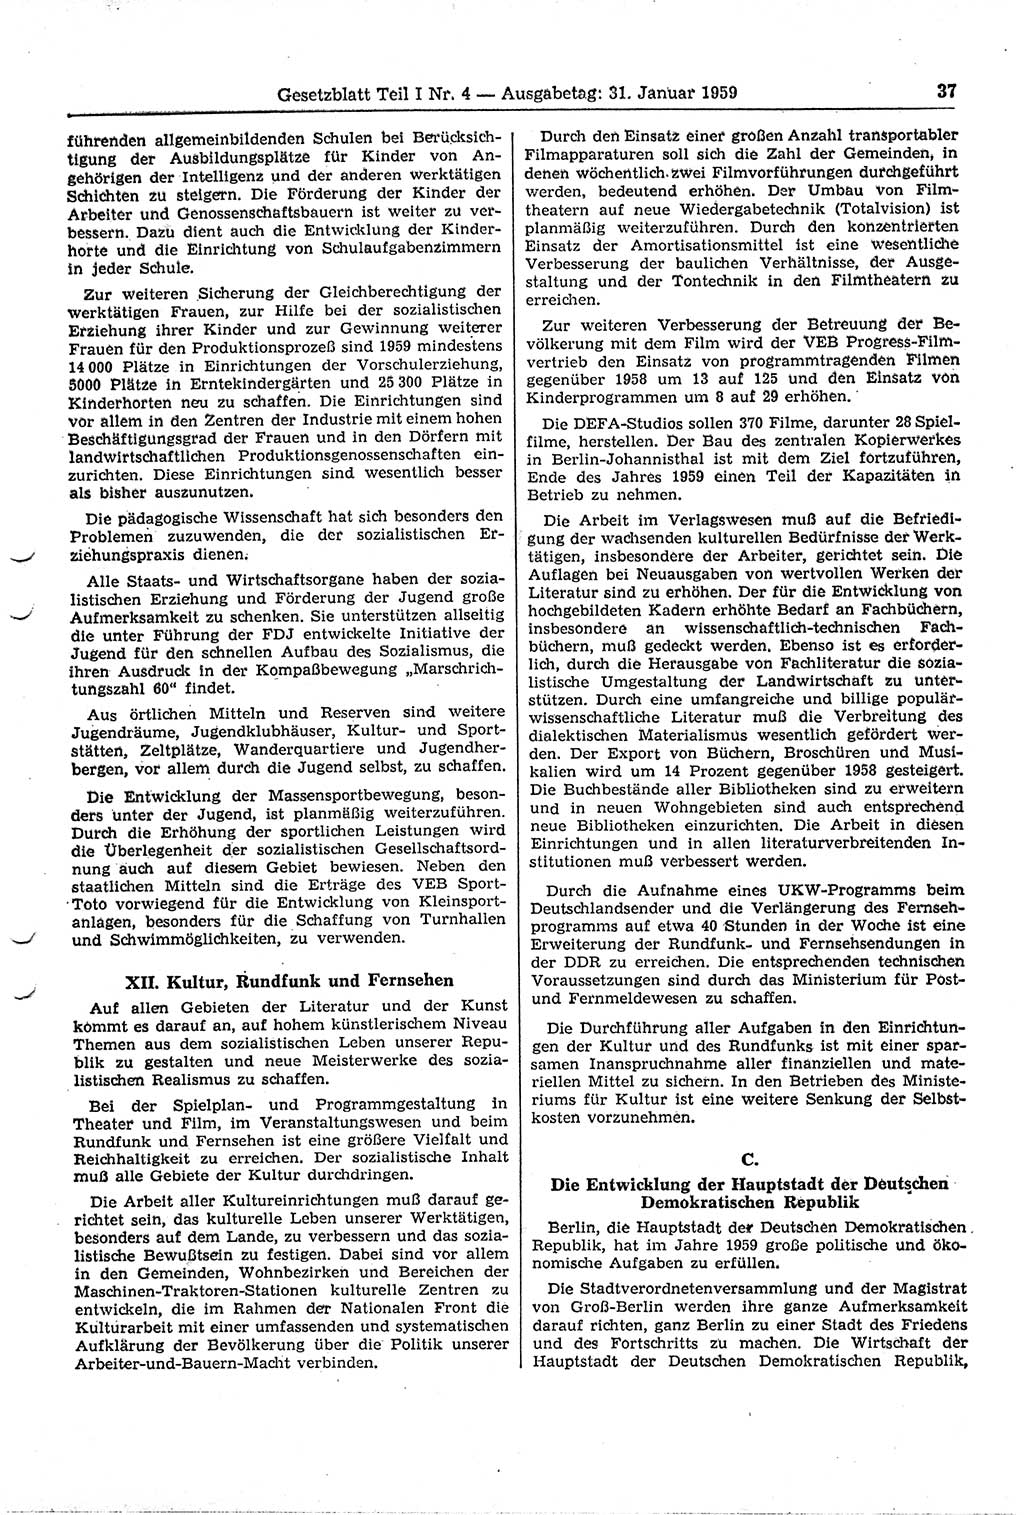 Gesetzblatt (GBl.) der Deutschen Demokratischen Republik (DDR) Teil Ⅰ 1959, Seite 37 (GBl. DDR Ⅰ 1959, S. 37)